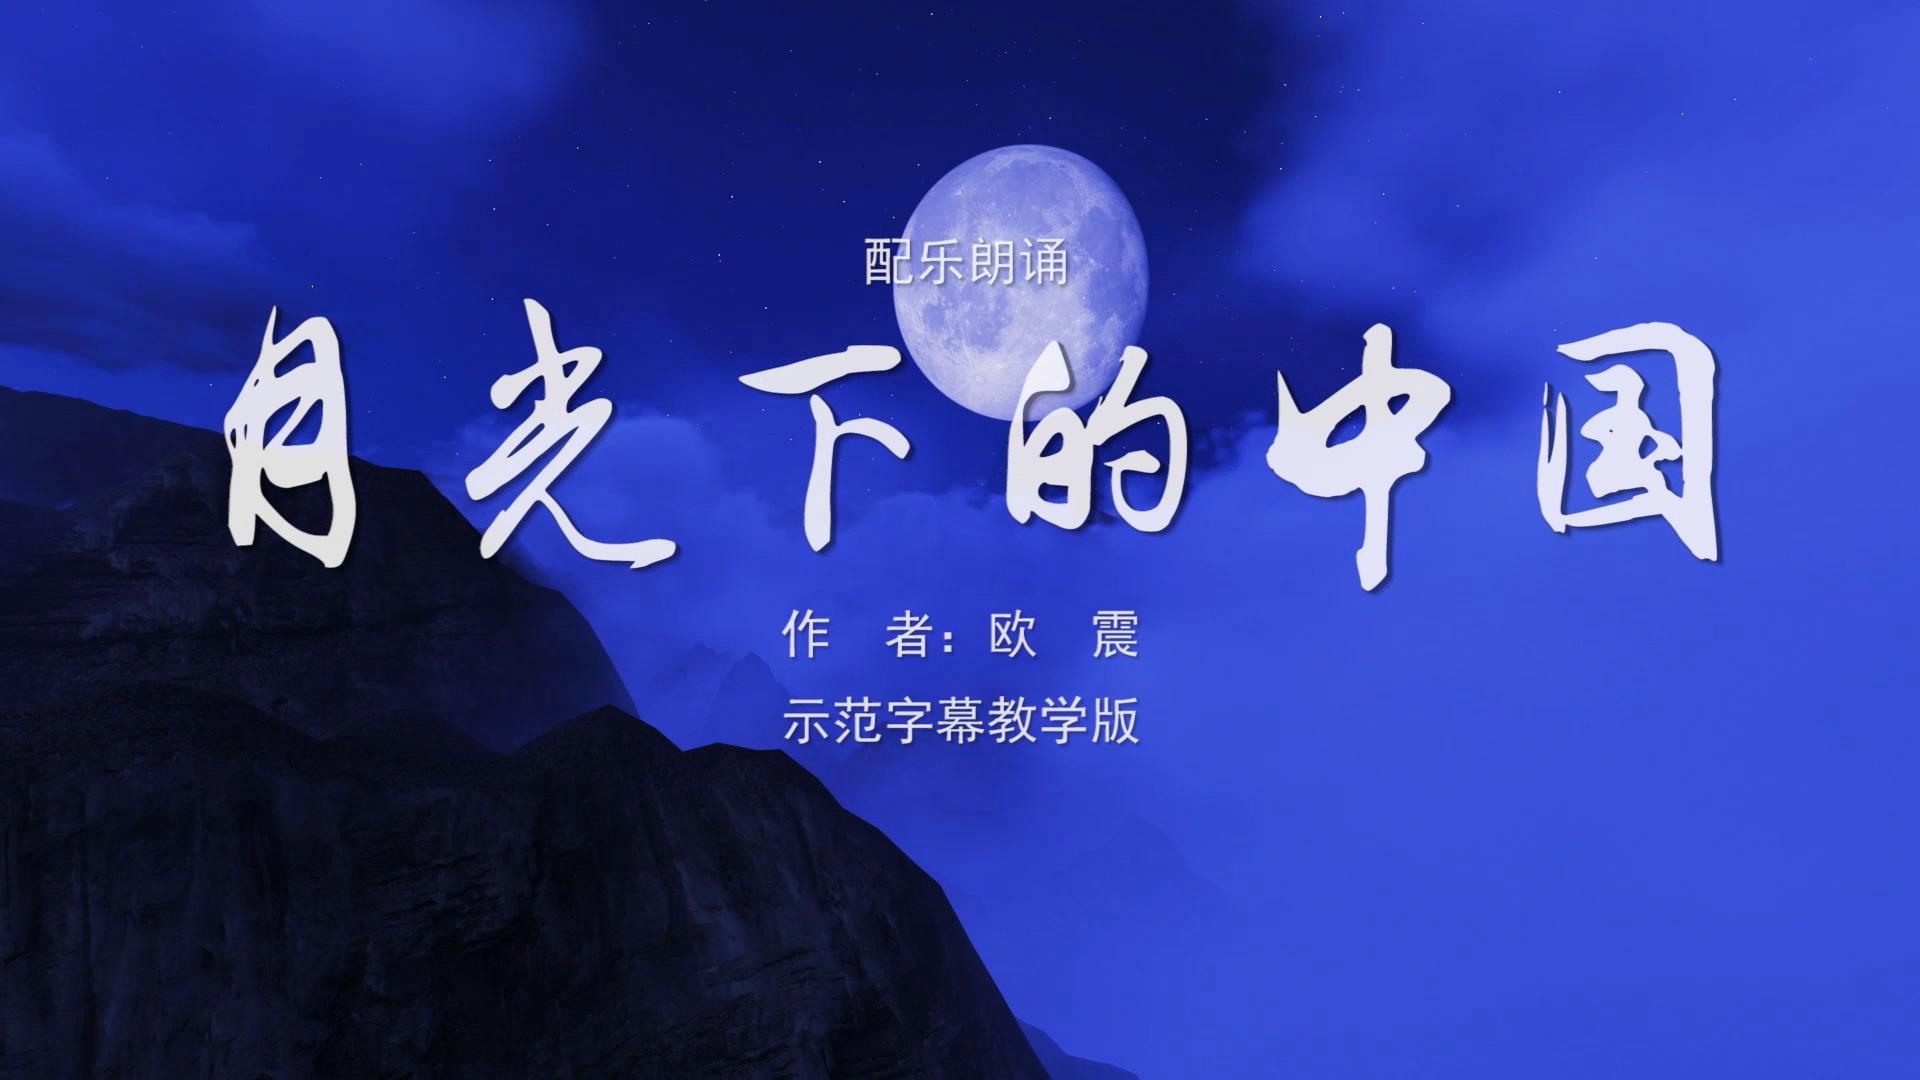 月光下的中国 诗歌朗诵配乐伴奏舞台演出LED背景